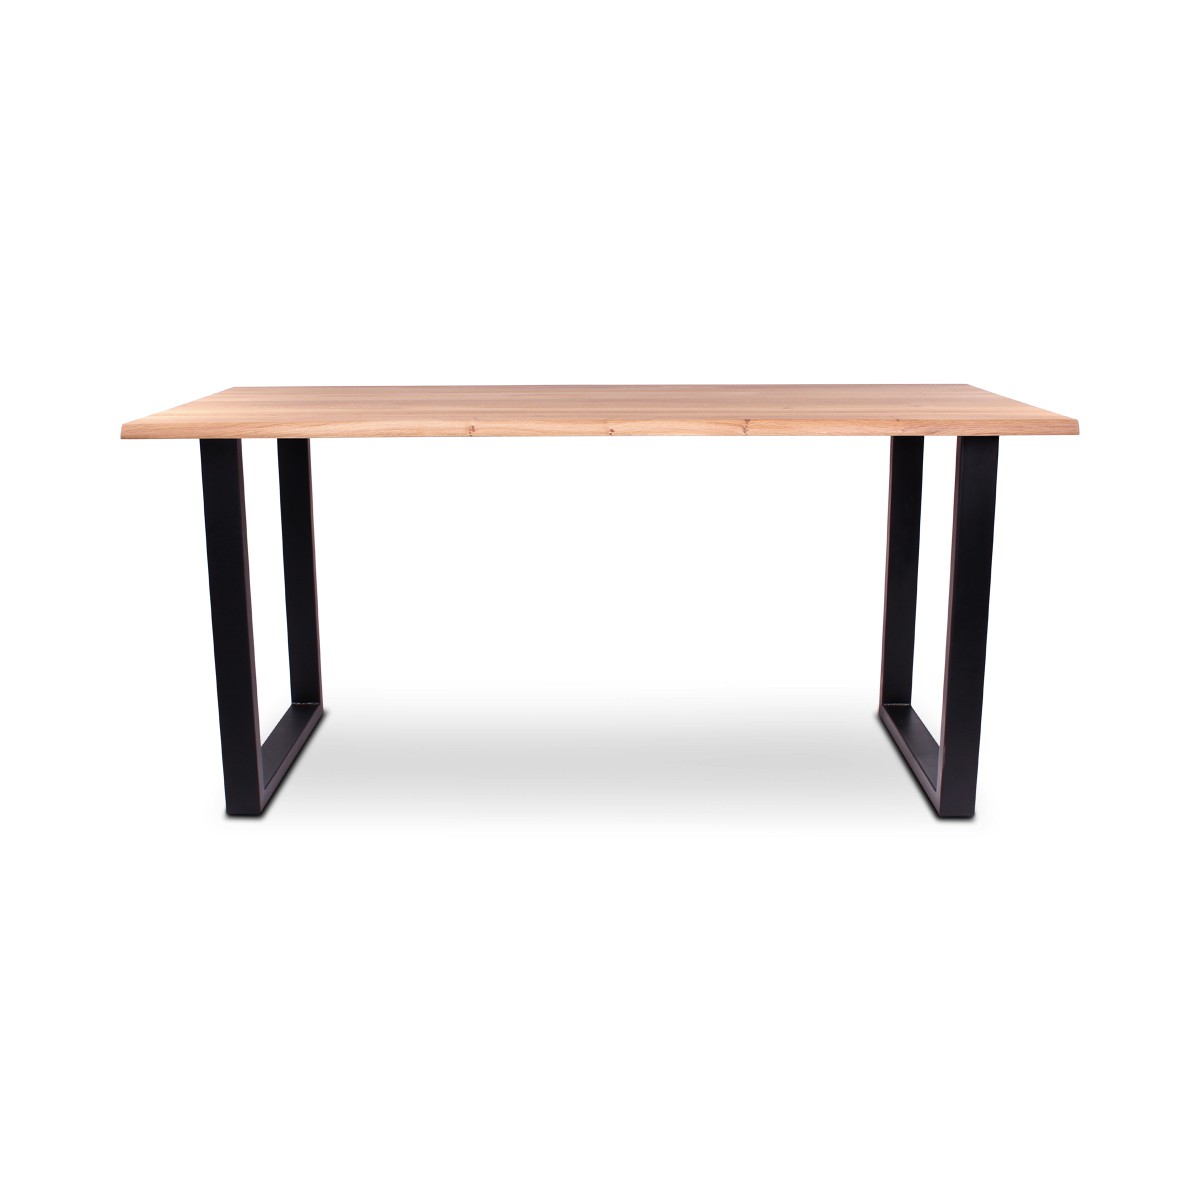   Table de bar Dima Trunk rectangulaire  160x100x110cm